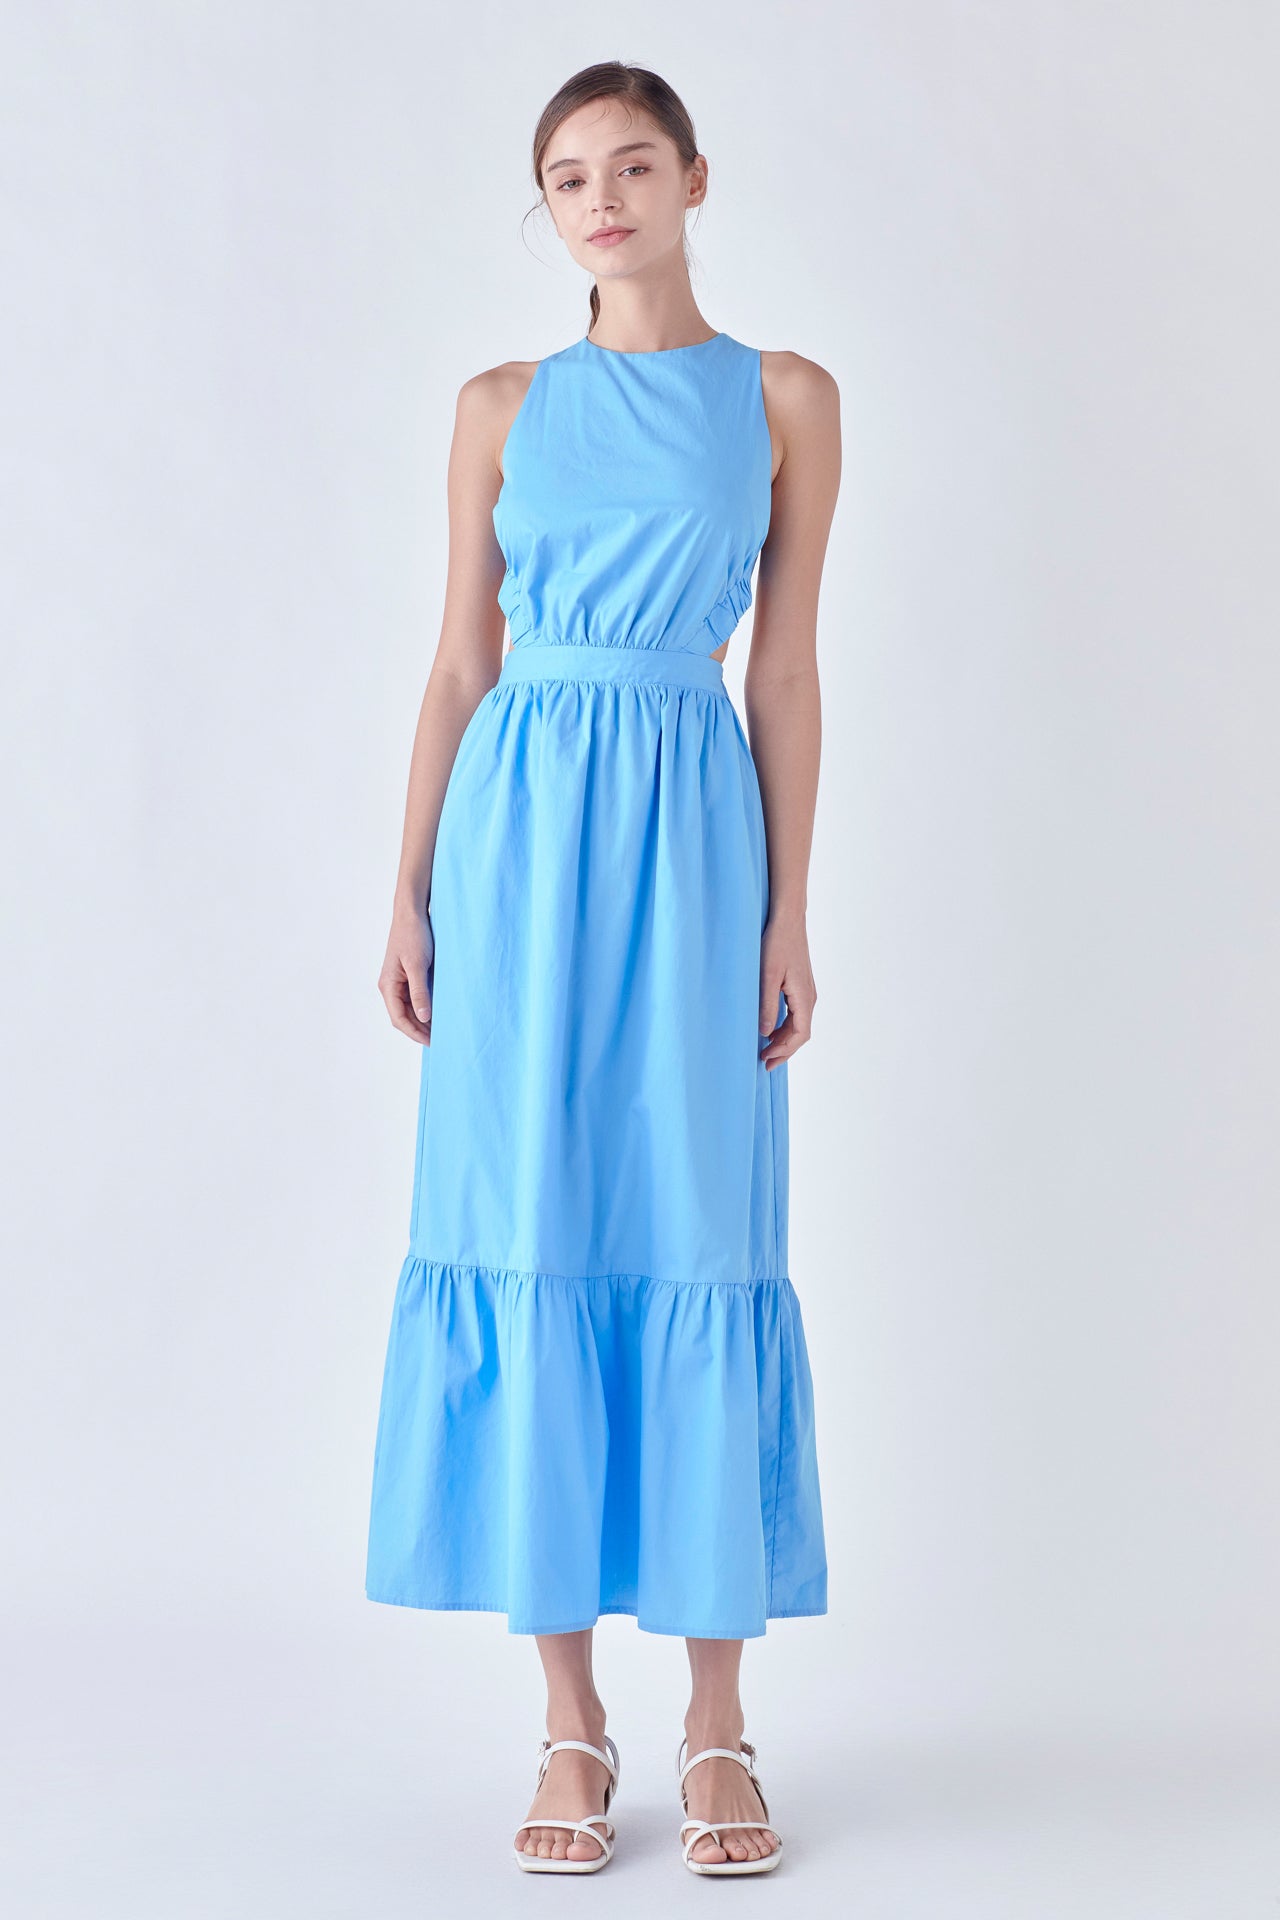 Elastic Detail Sleeveless Dress